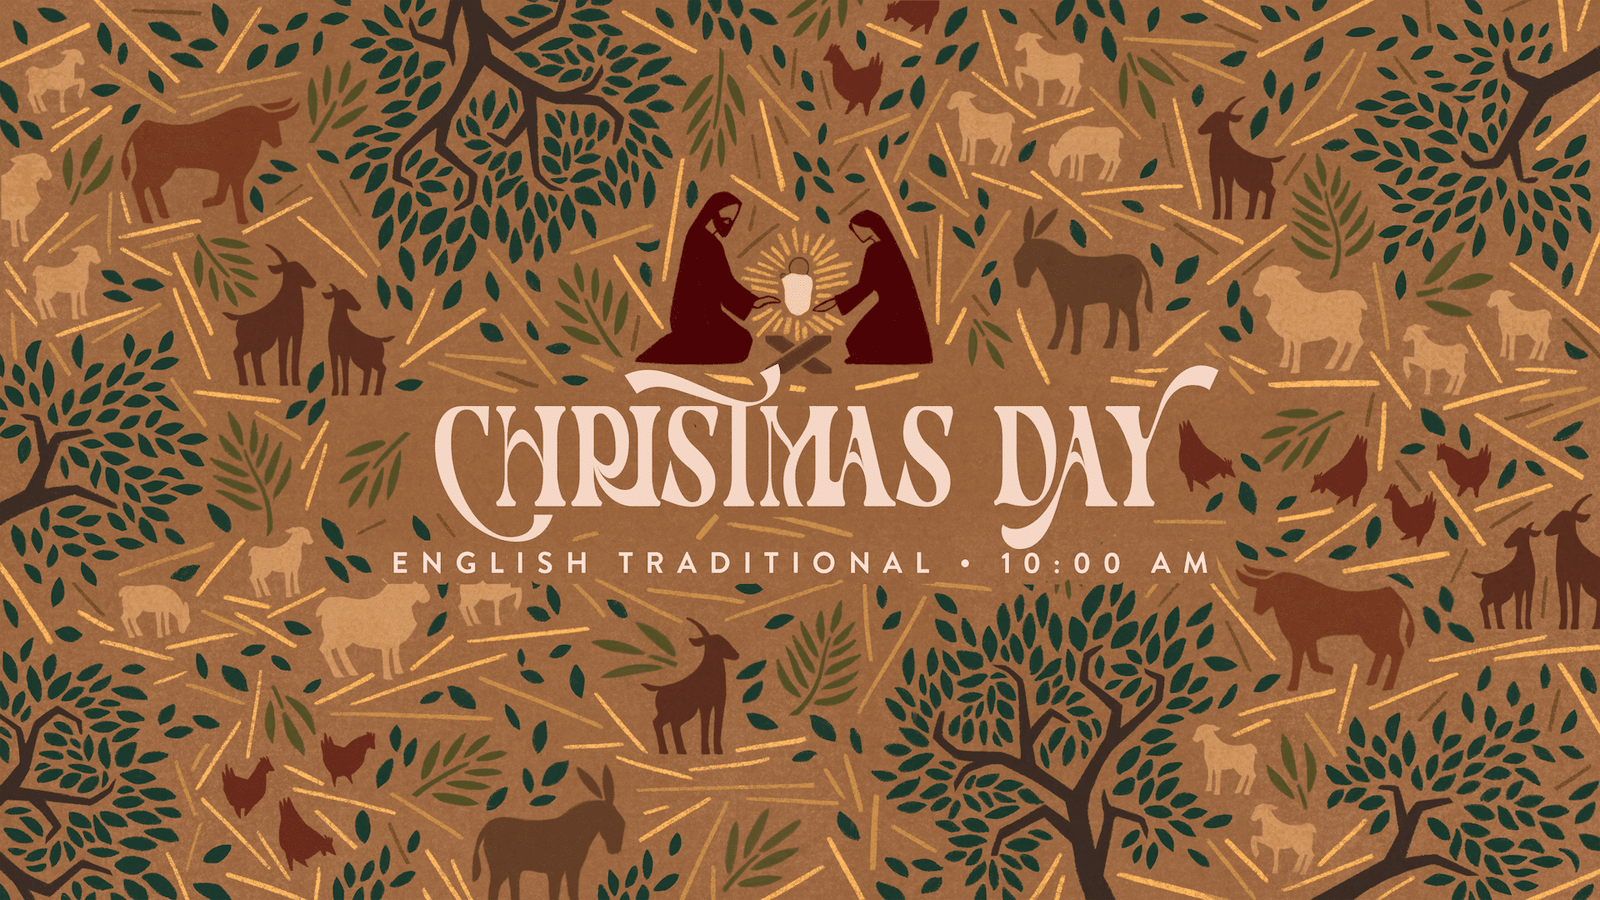 Christmas Day, English Traditional Worship, 10:00 a.m.